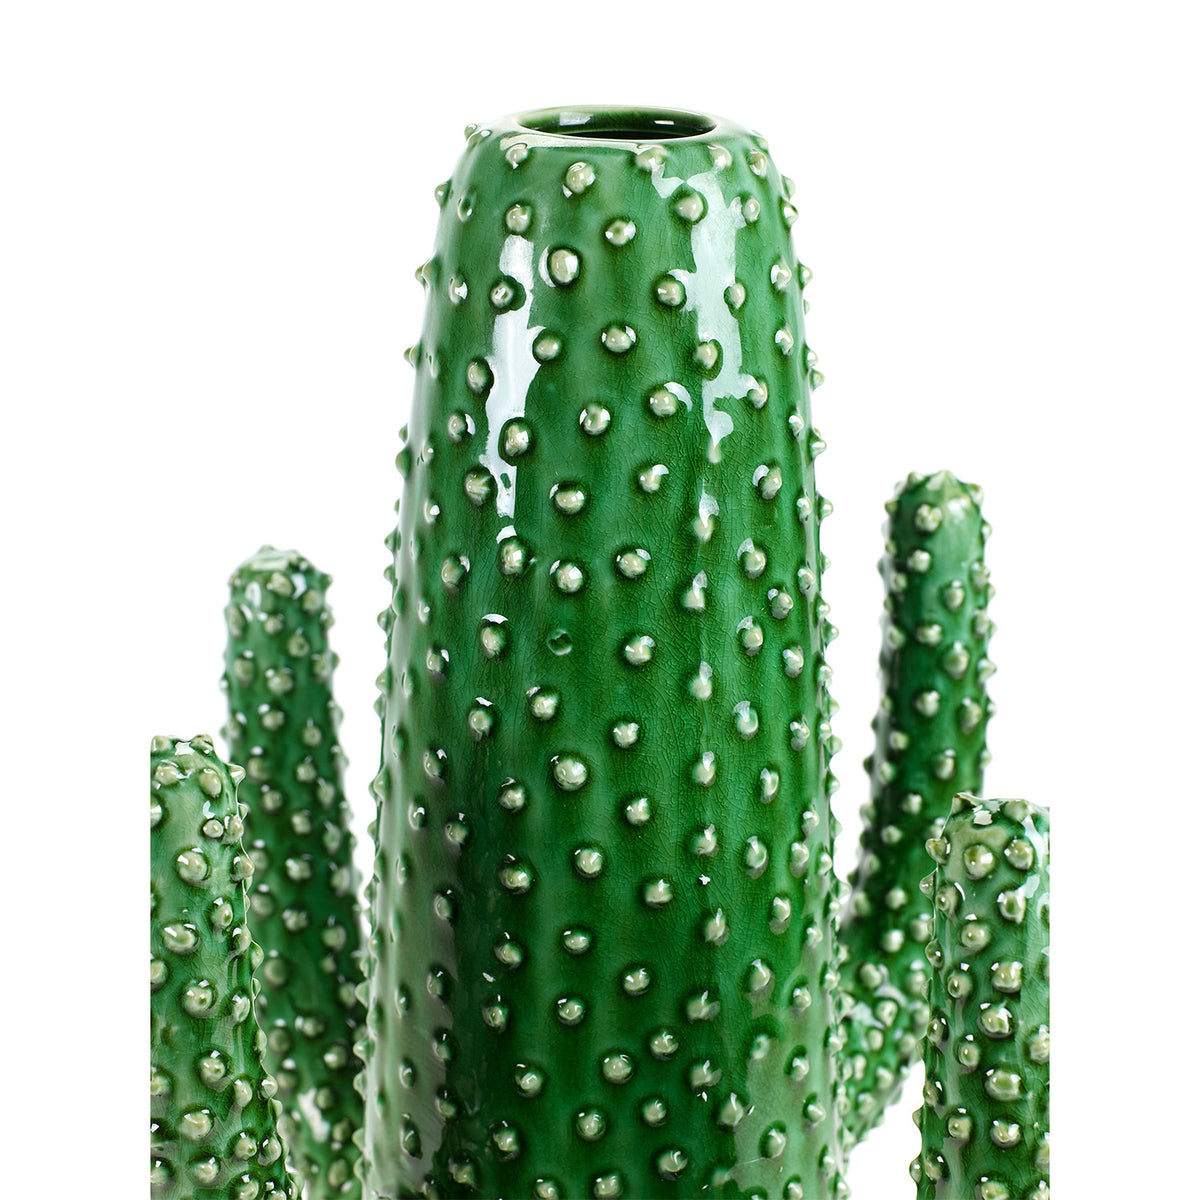 Cactus Vase Extra Large